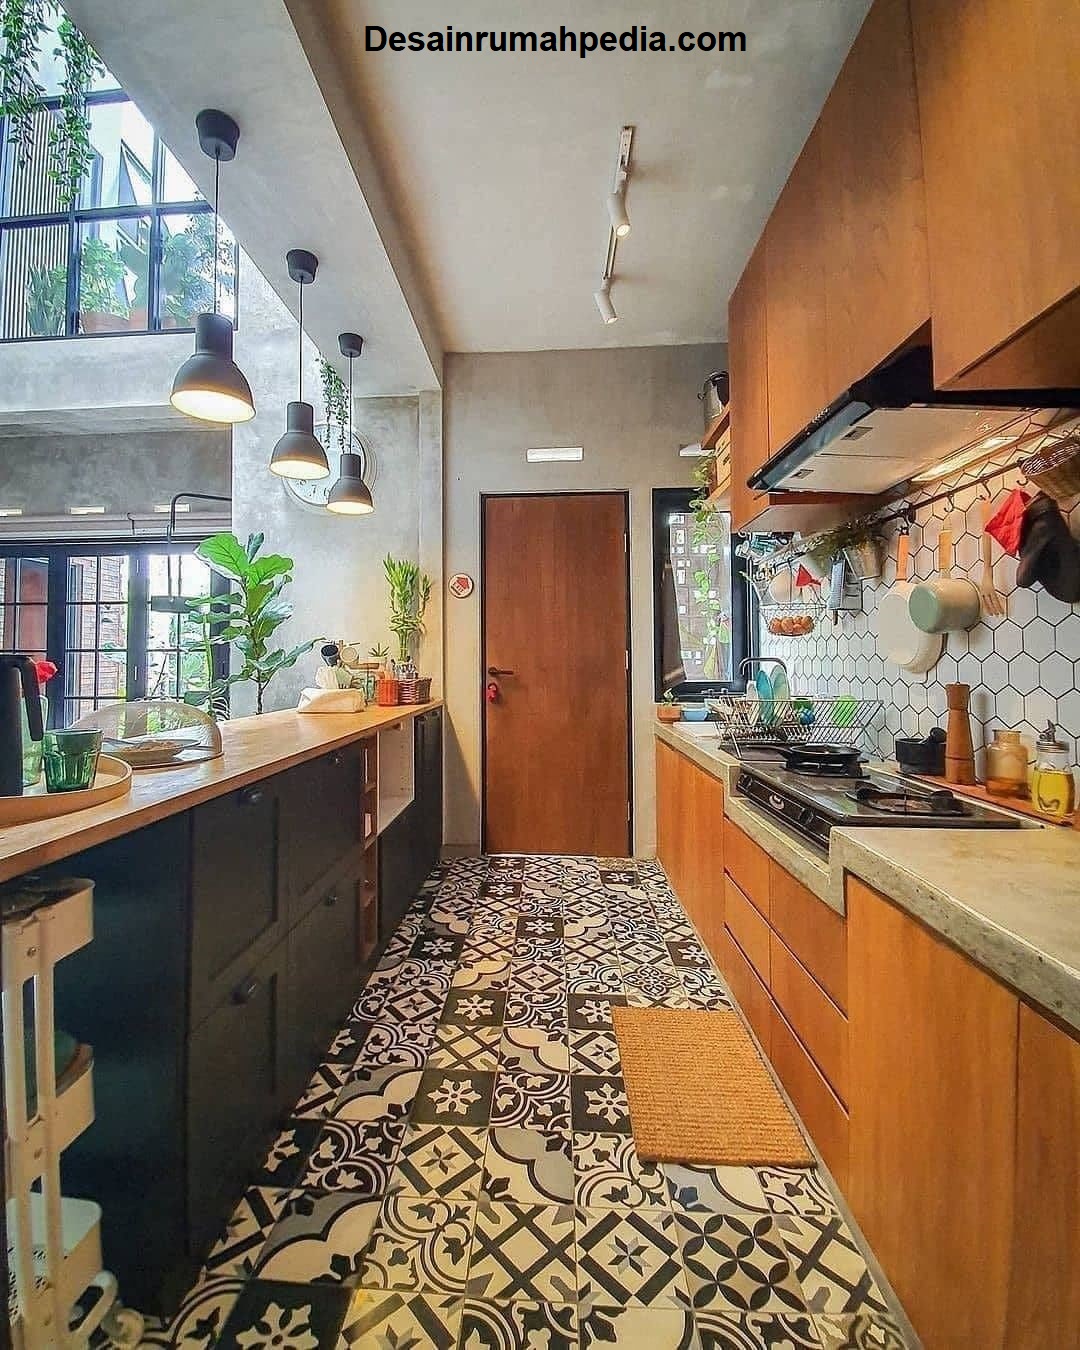 Desain Interior Dapur Trendy Untuk Rumah Sederhana Desainrumahpediacom Inspirasi Desain Rumah Minimalis Modern